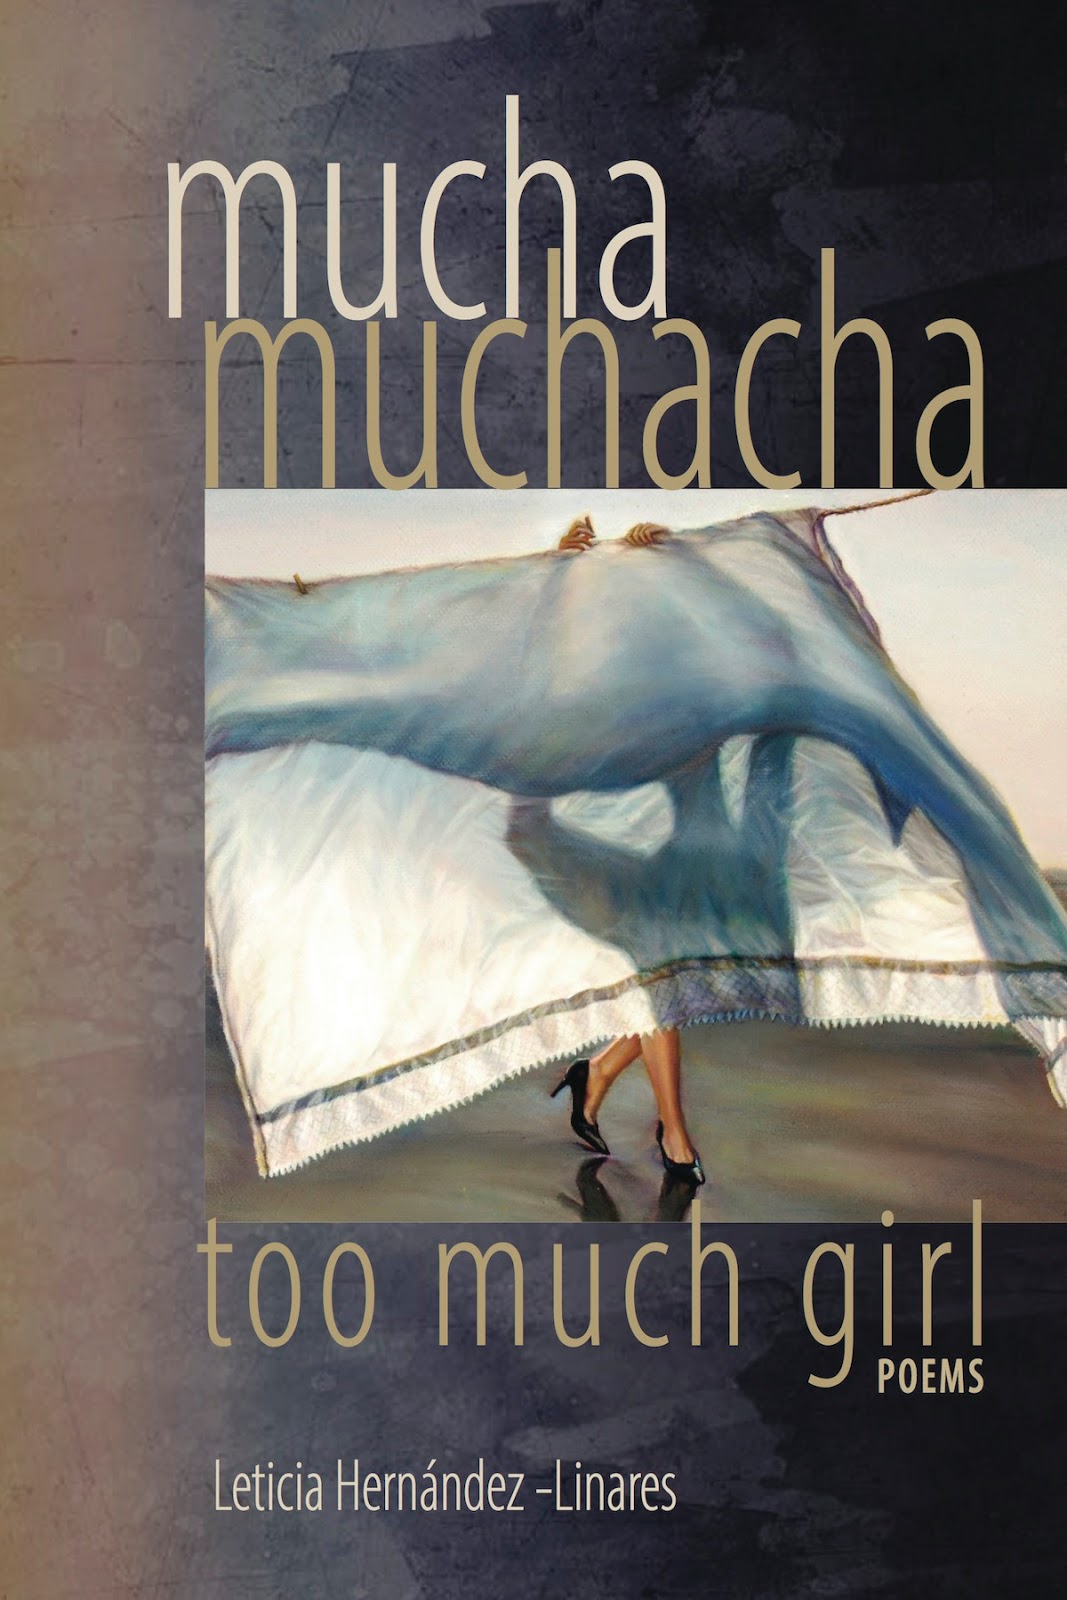 mucha muchacha - too much girl covers